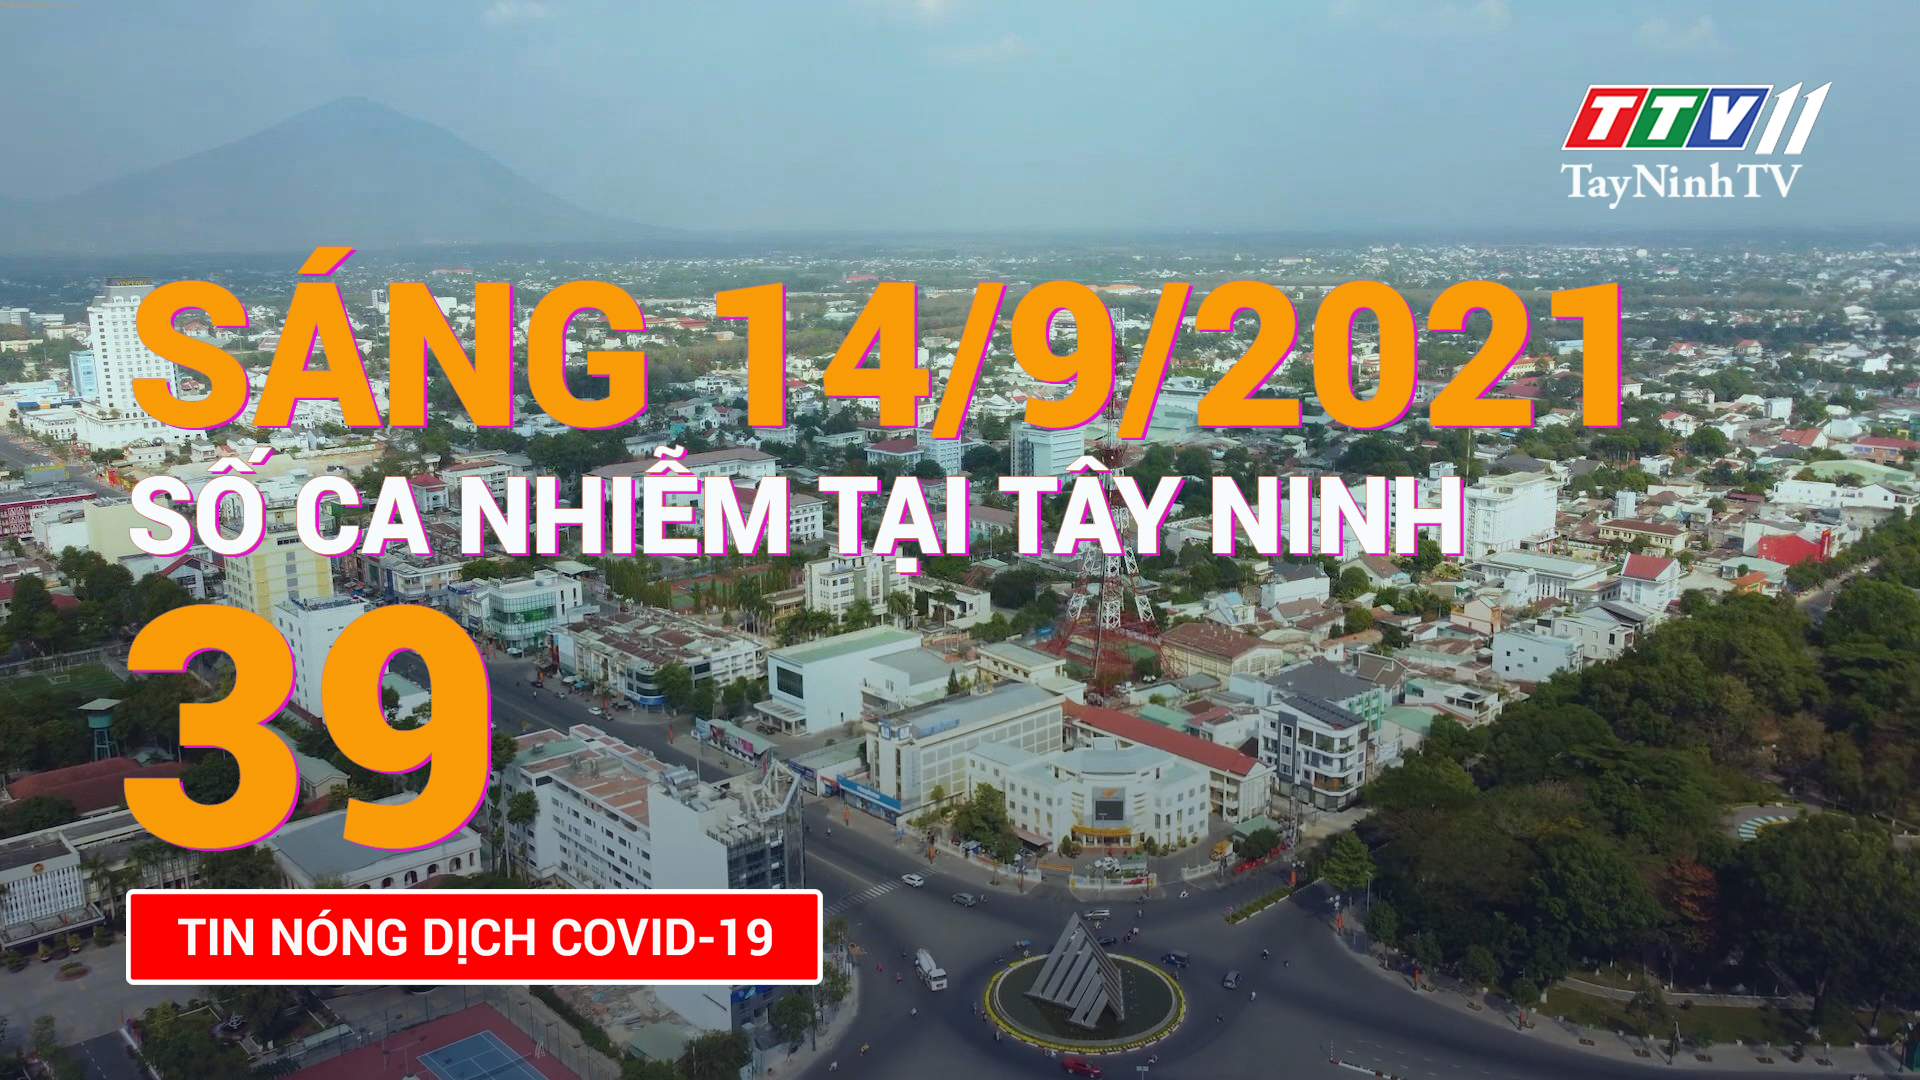 Tin tức Covid-19 sáng 14/9/2021 | TayNinhTV